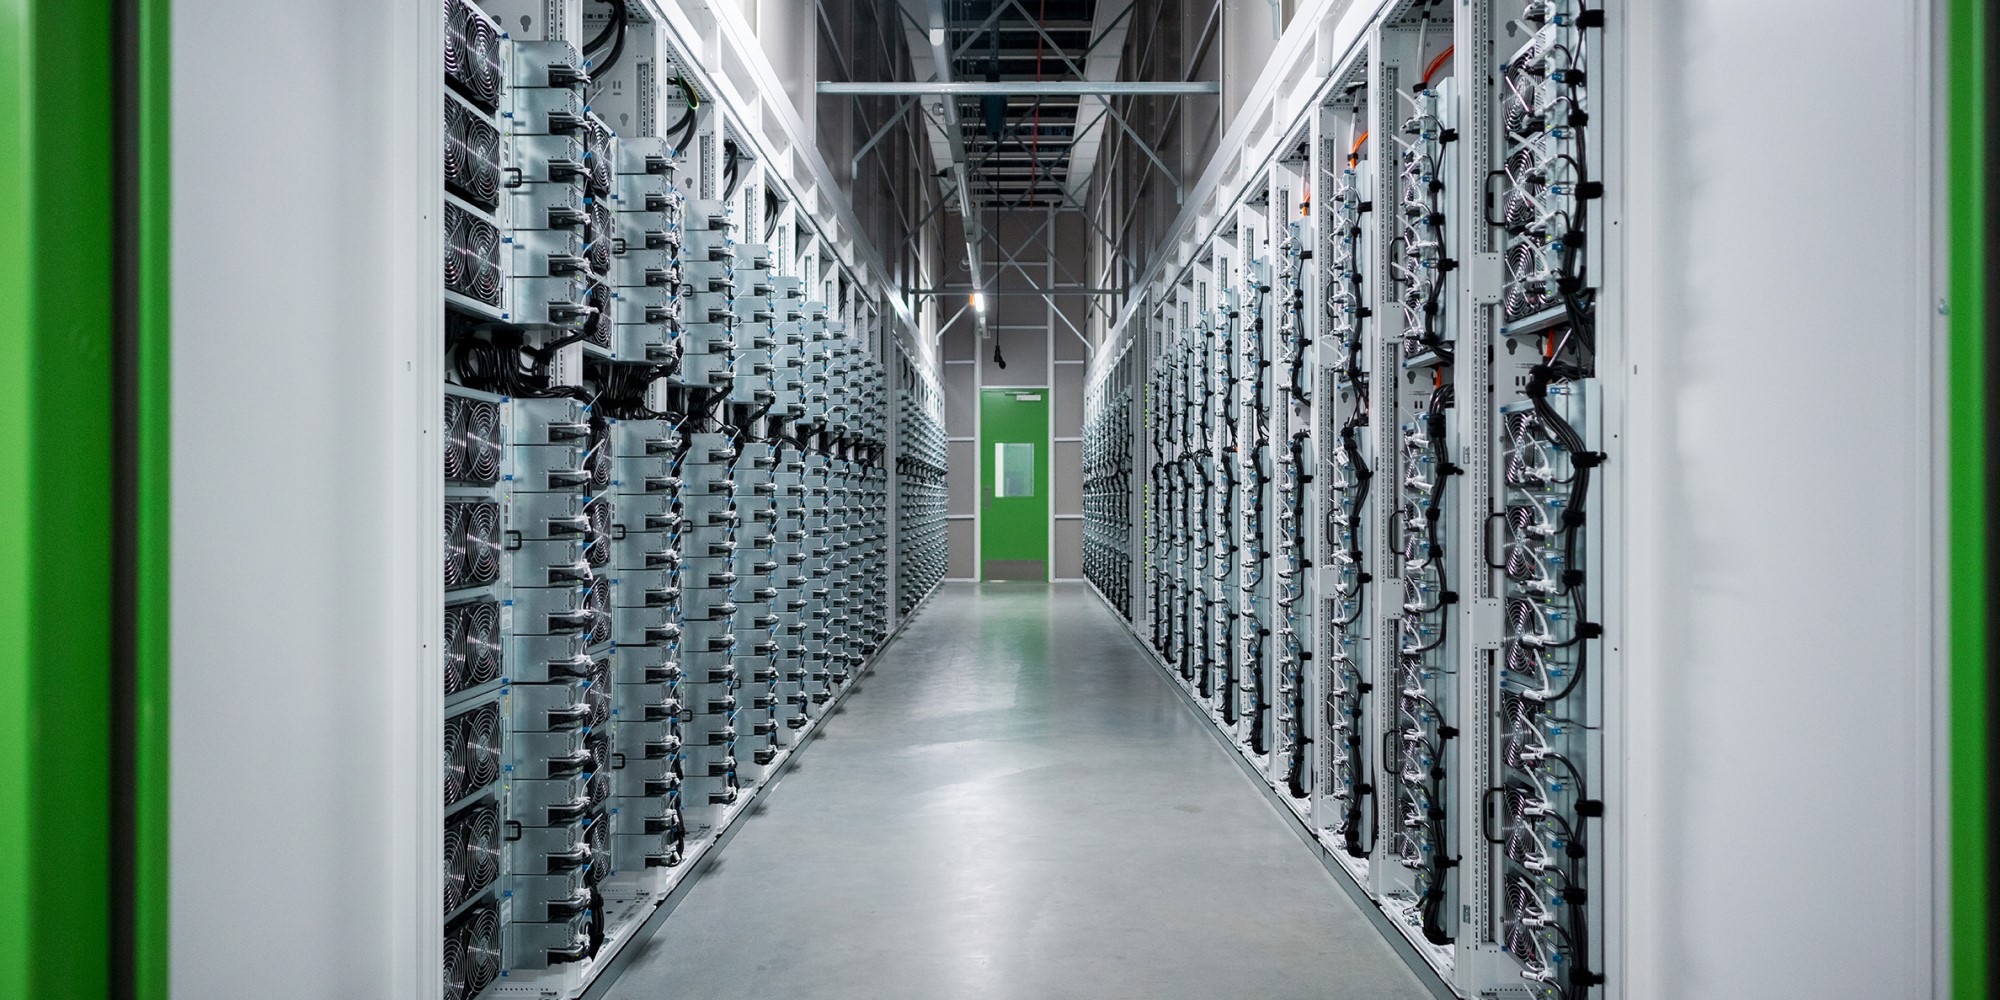 Microsoft datacenter hot aisle rij hoge server racks centraal licht